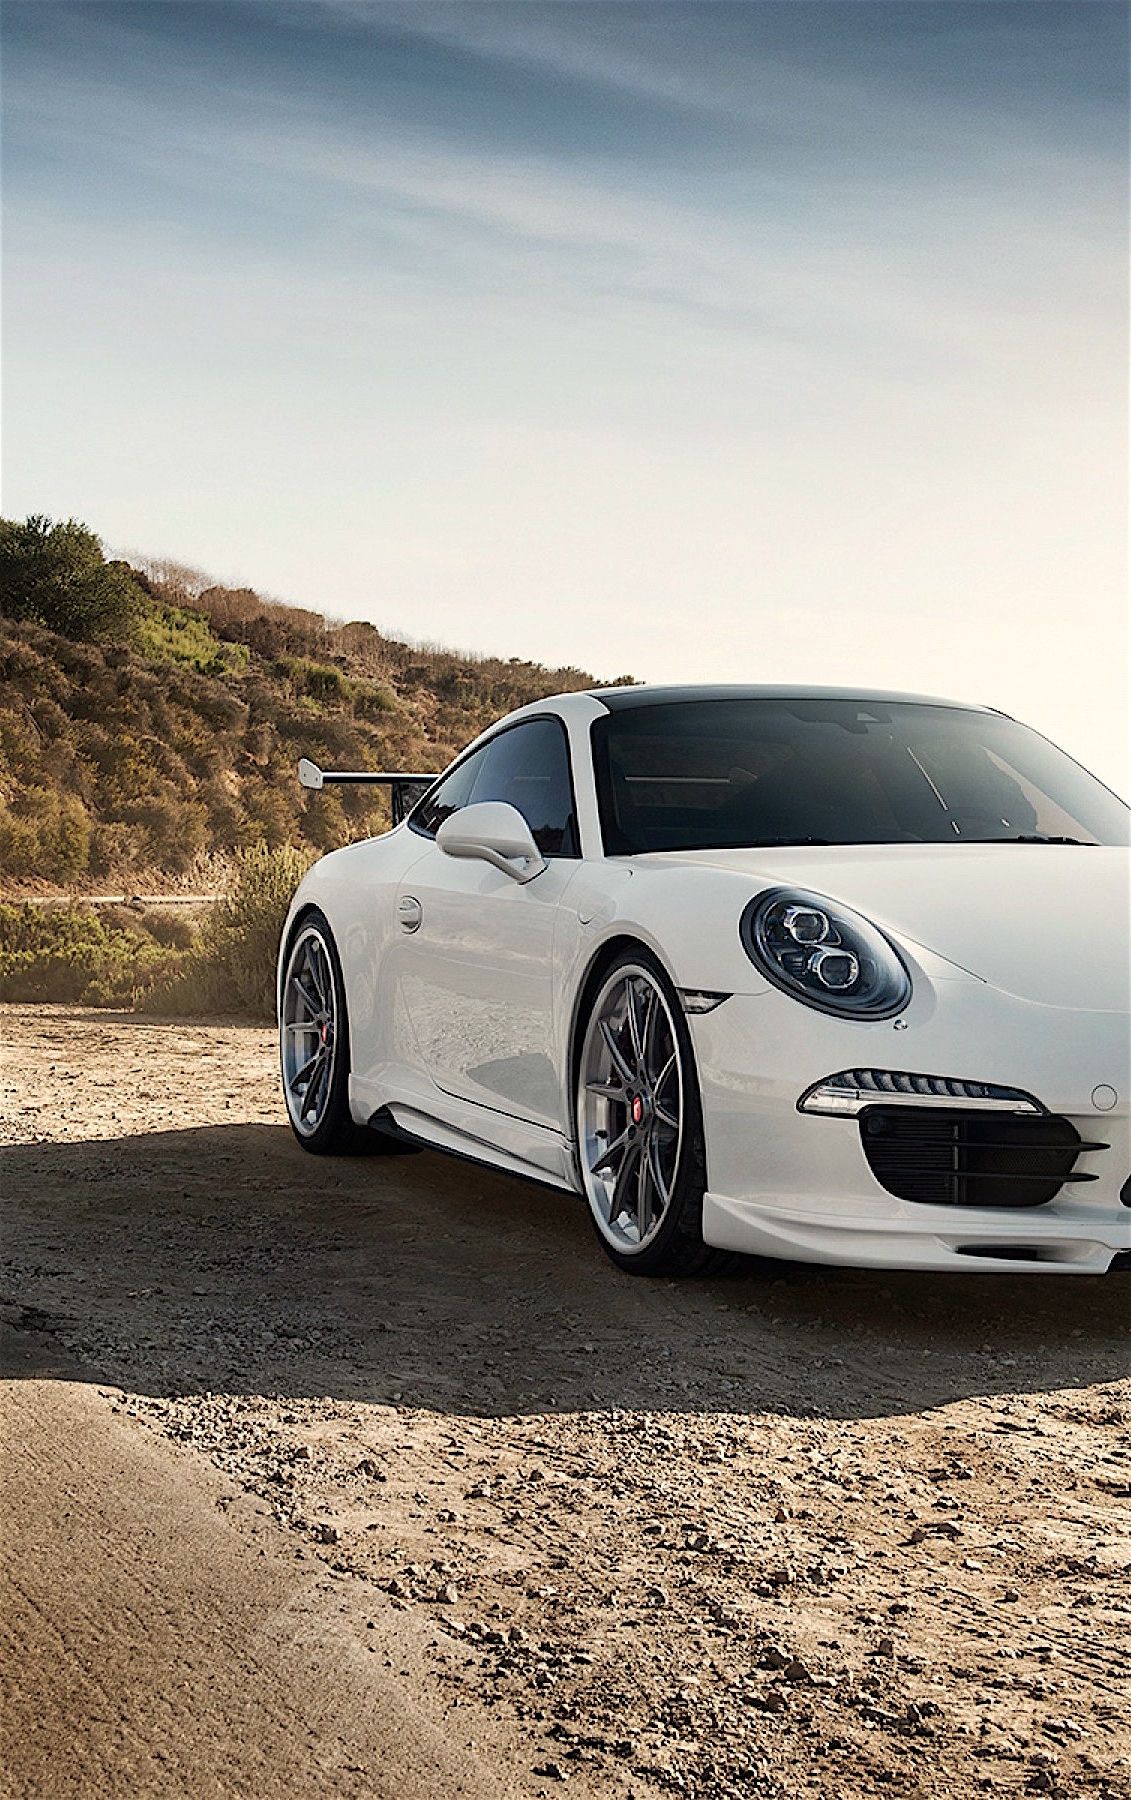 Porsche 911 White Sportscar Mountain Road Sky Car Wallpaper For Mobile